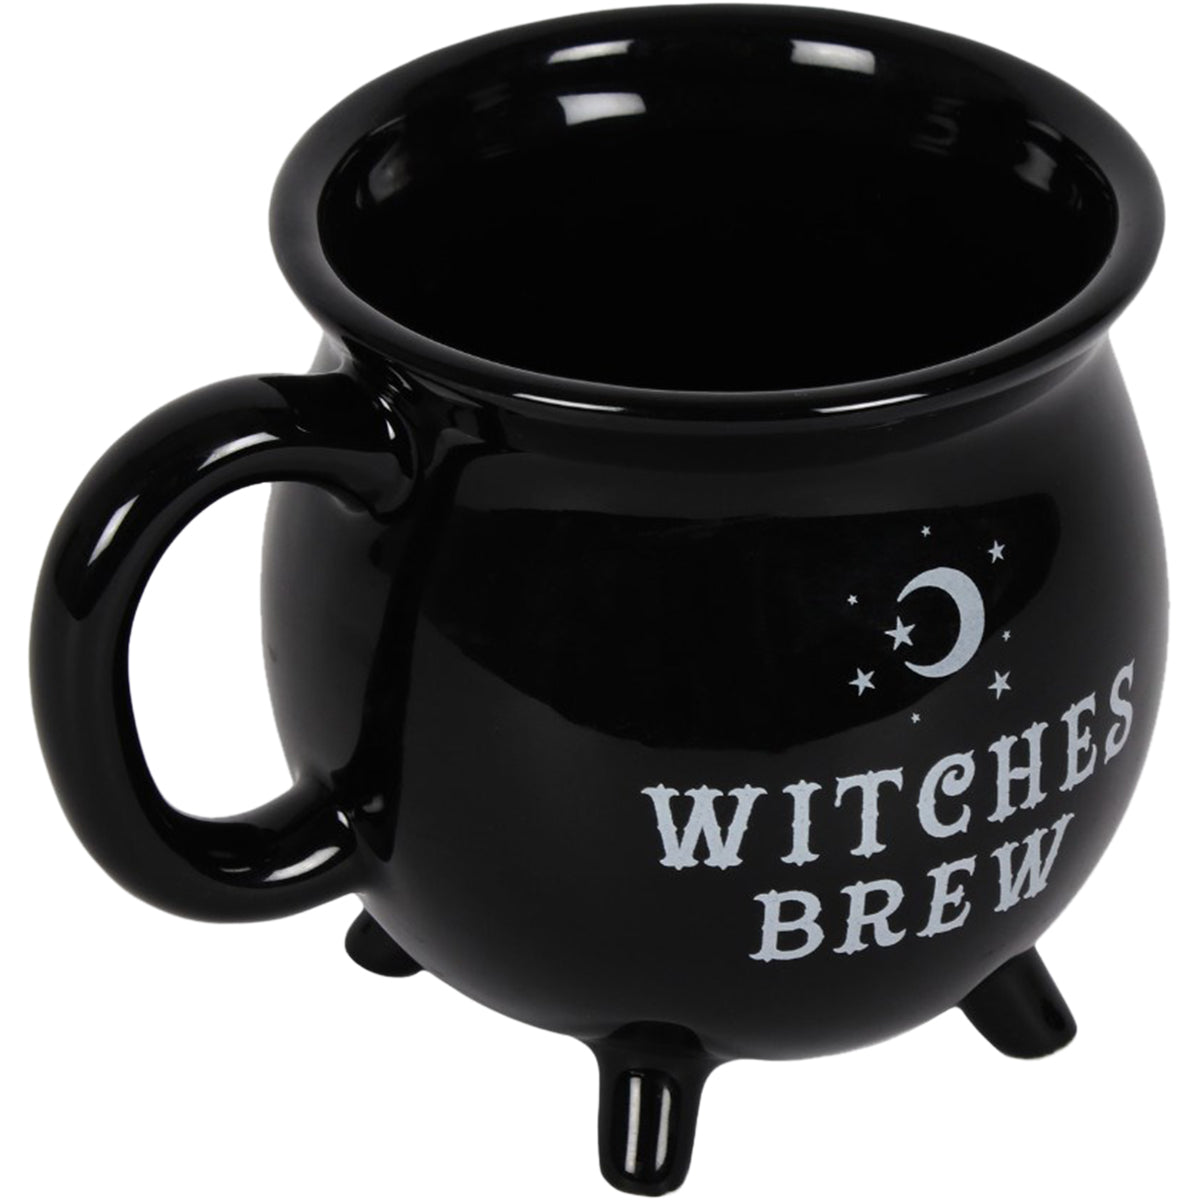 MUG WITCHES BREW - Mug Cauldron